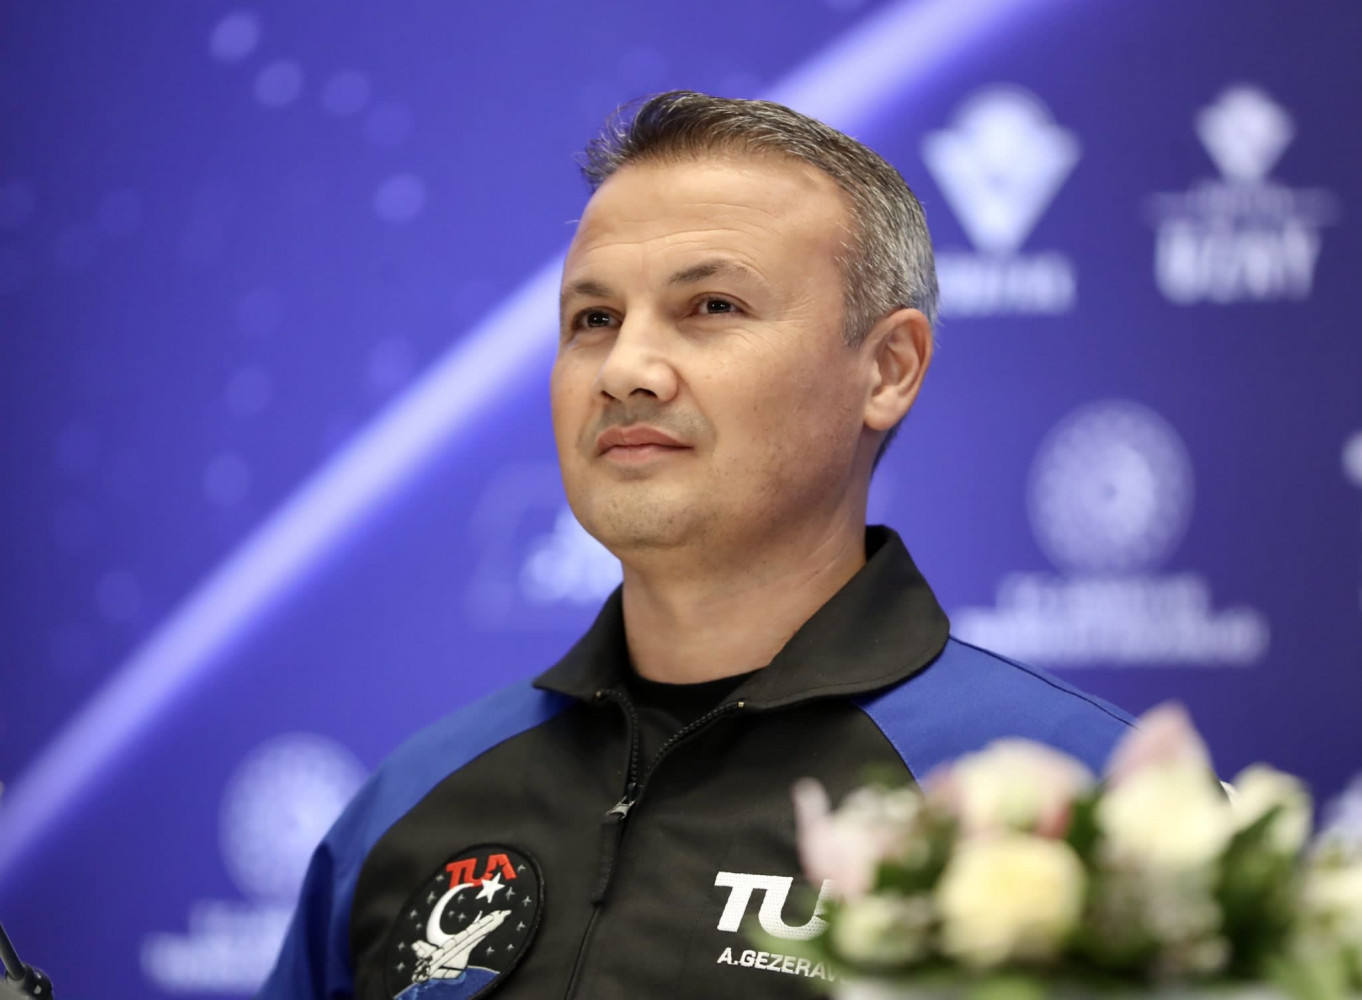 İlk Türk astronot Alper Gezeravcı’nın uzay yolculuğu başladı